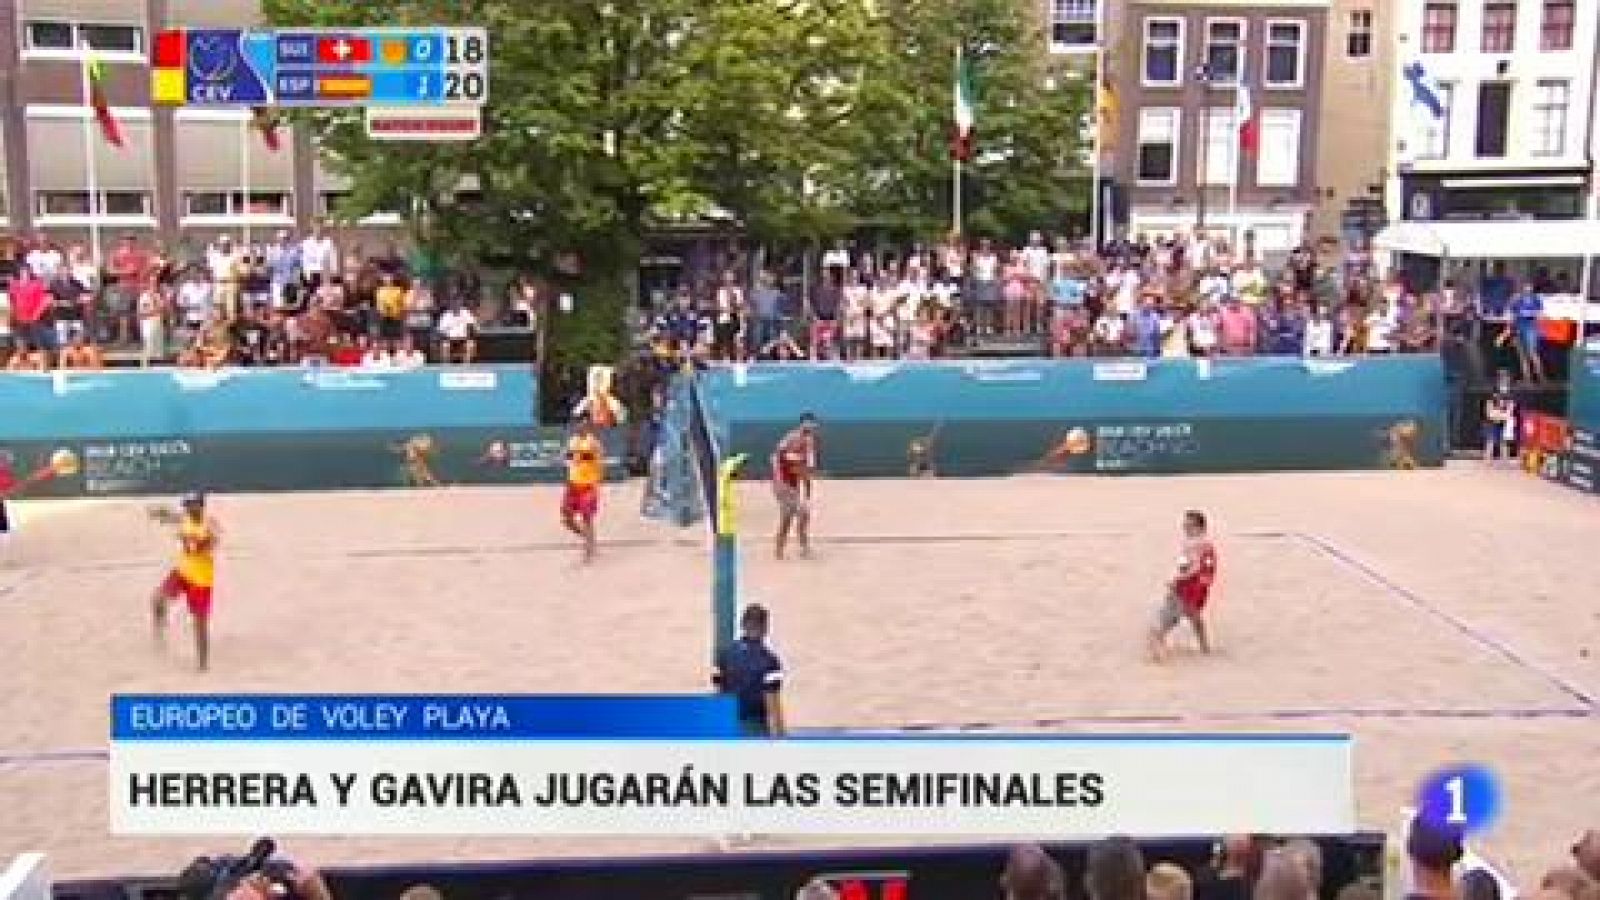 Telediario 1: Herrera y Gavira jugarán las semifinales del Europeo de voley playa | RTVE Play